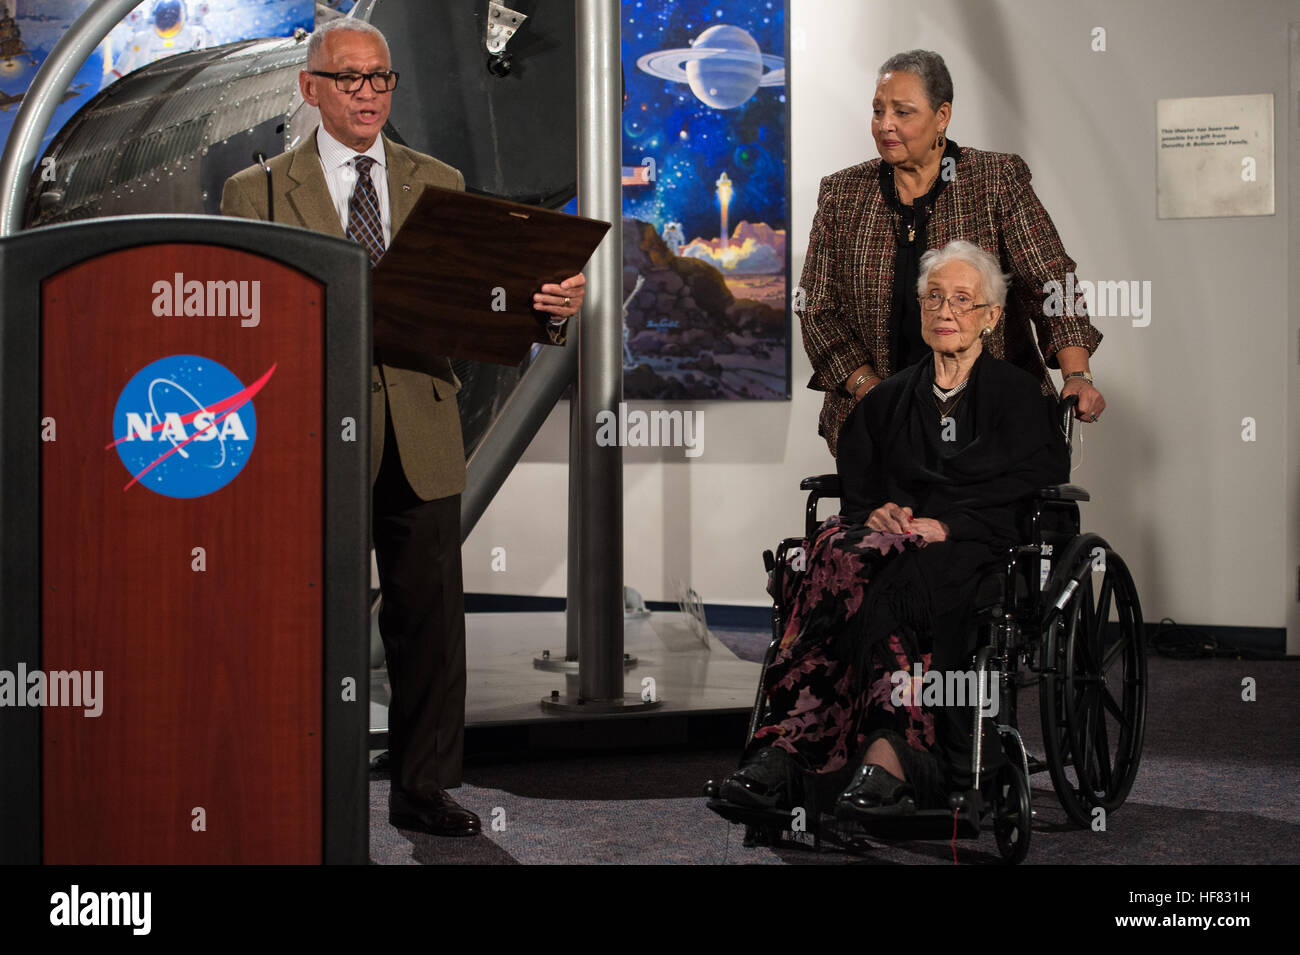 L'administrateur de la NASA Charles Bolden présente un prix à Katherine Johnson, le mathématicien, physicien américain africain, et de l'espace scientifique, qui a calculé les trajectoires de vol de John Glenn's premier vol orbital en 1962, lors de la réception en l'honneur des membres de la région de l'Ouest division ordinateurs distincts de Langley Research Center le Jeudi, Décembre 1, 2016, à la Virginia Air and Space Center à Hampton, VA. Par la suite, les invités ont assisté à la première de "Chiffres cachés" un film qui stars Taraji P. Henson que Katherine Johnson, Octavia Spencer comme Dorothy Vaughan et Janelle Monae comme Mar Banque D'Images